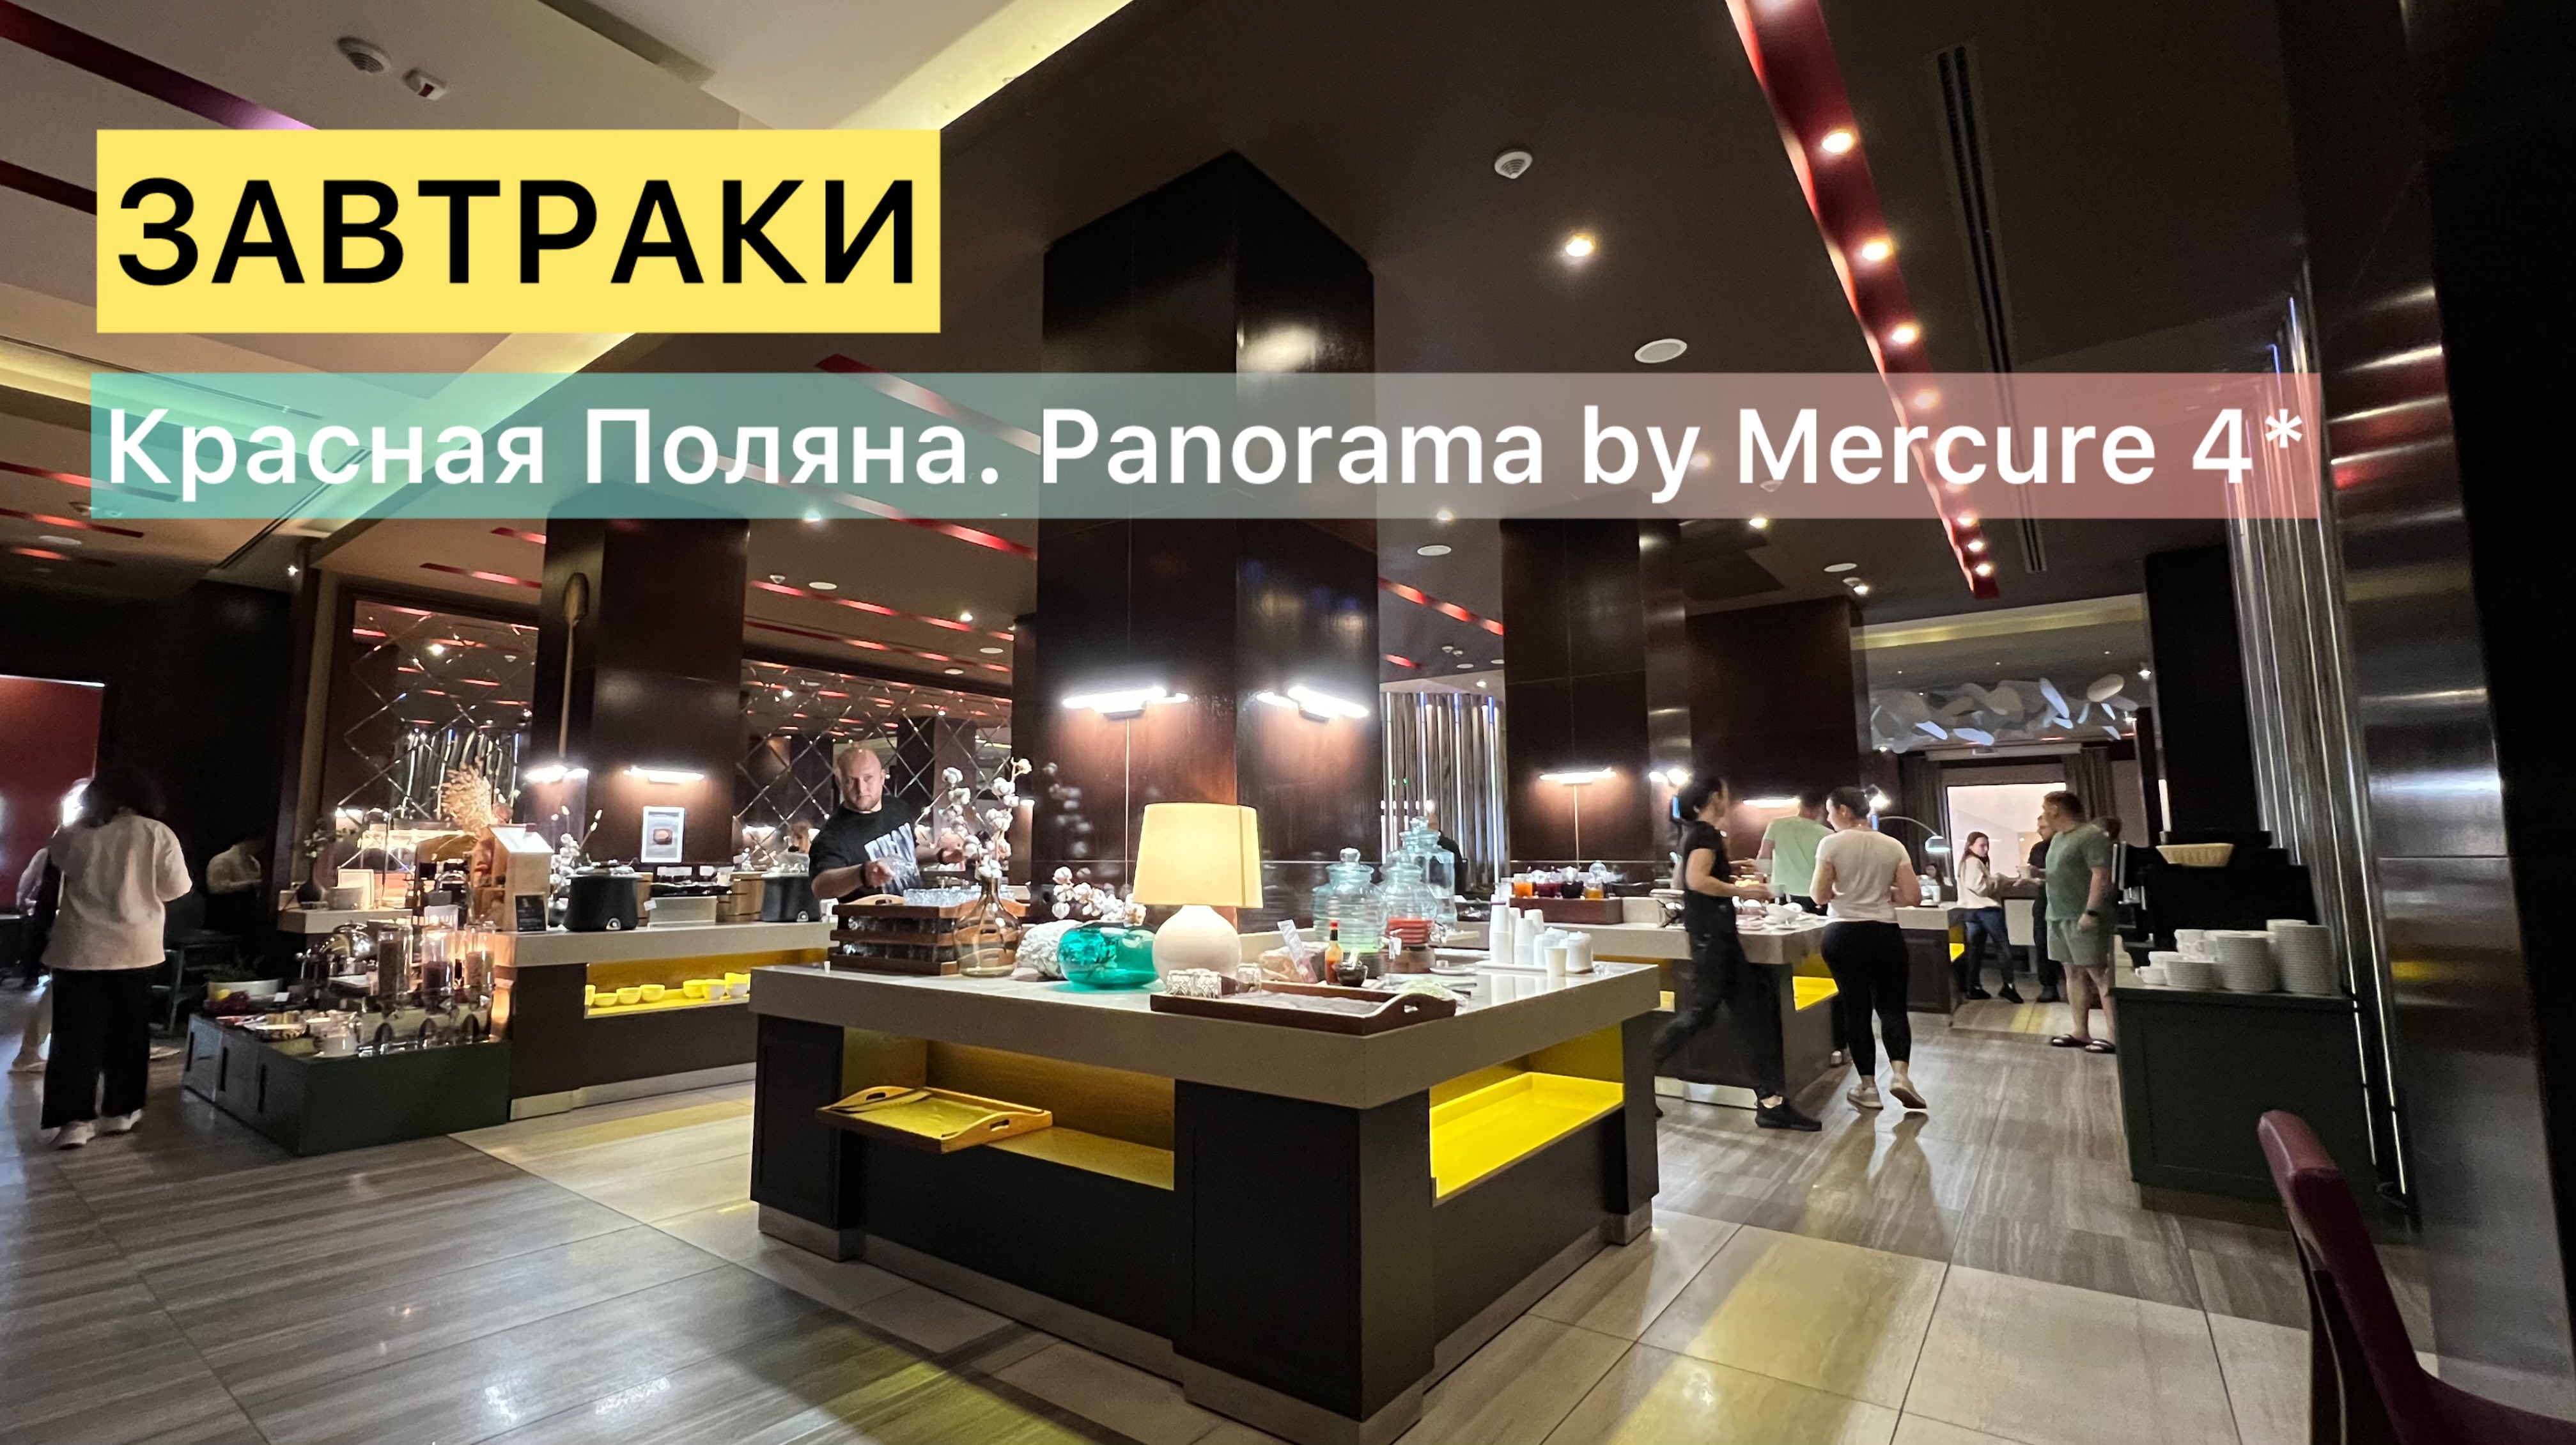 ЗАВТРАКИ. Красная Поляна. Отель “Panorama by Mercure” 4*.